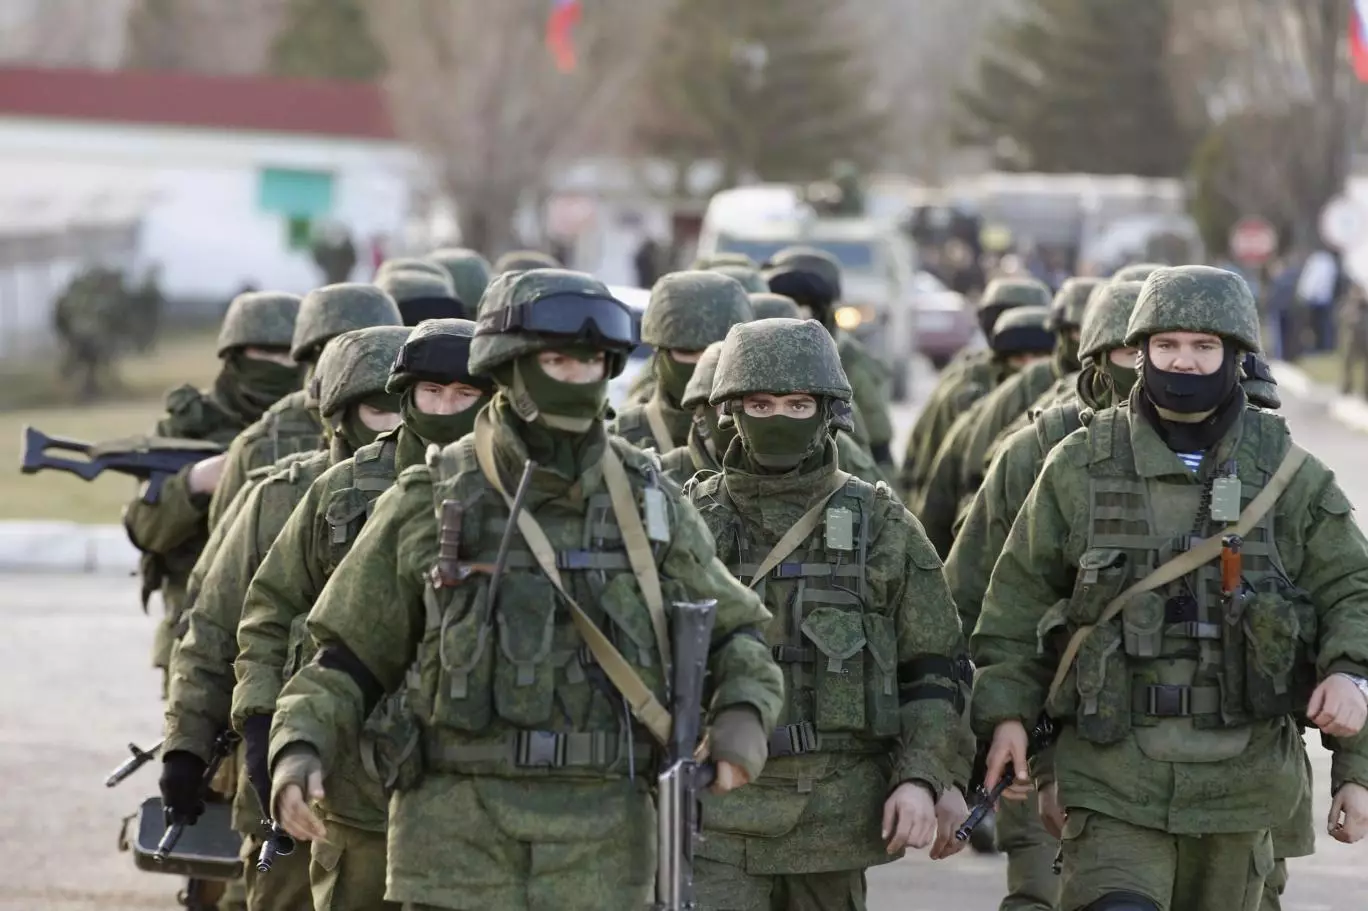 Rusiya Donetsk və Luqanska hücumlar təşkil etdi